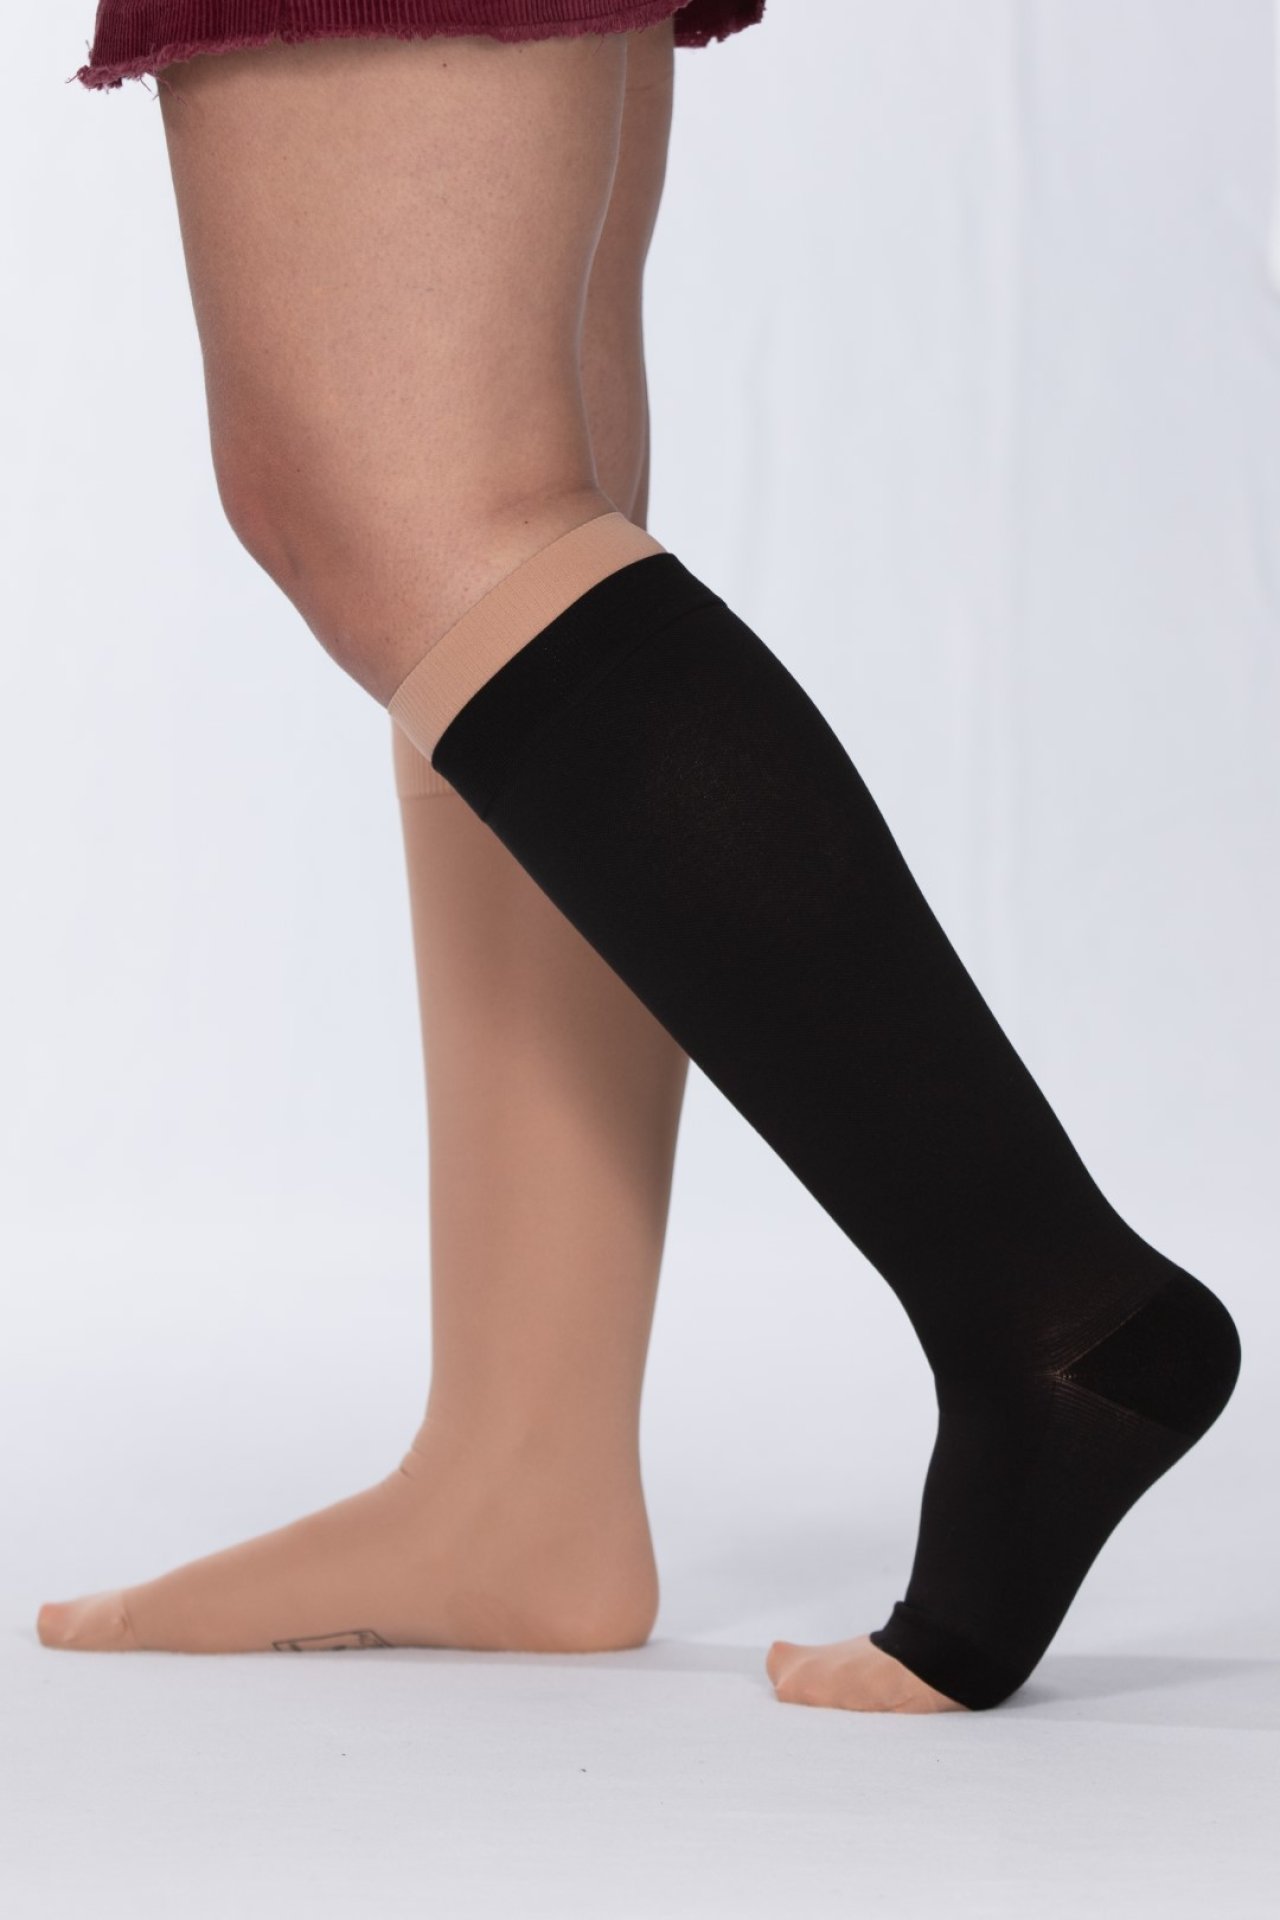 leg-compression